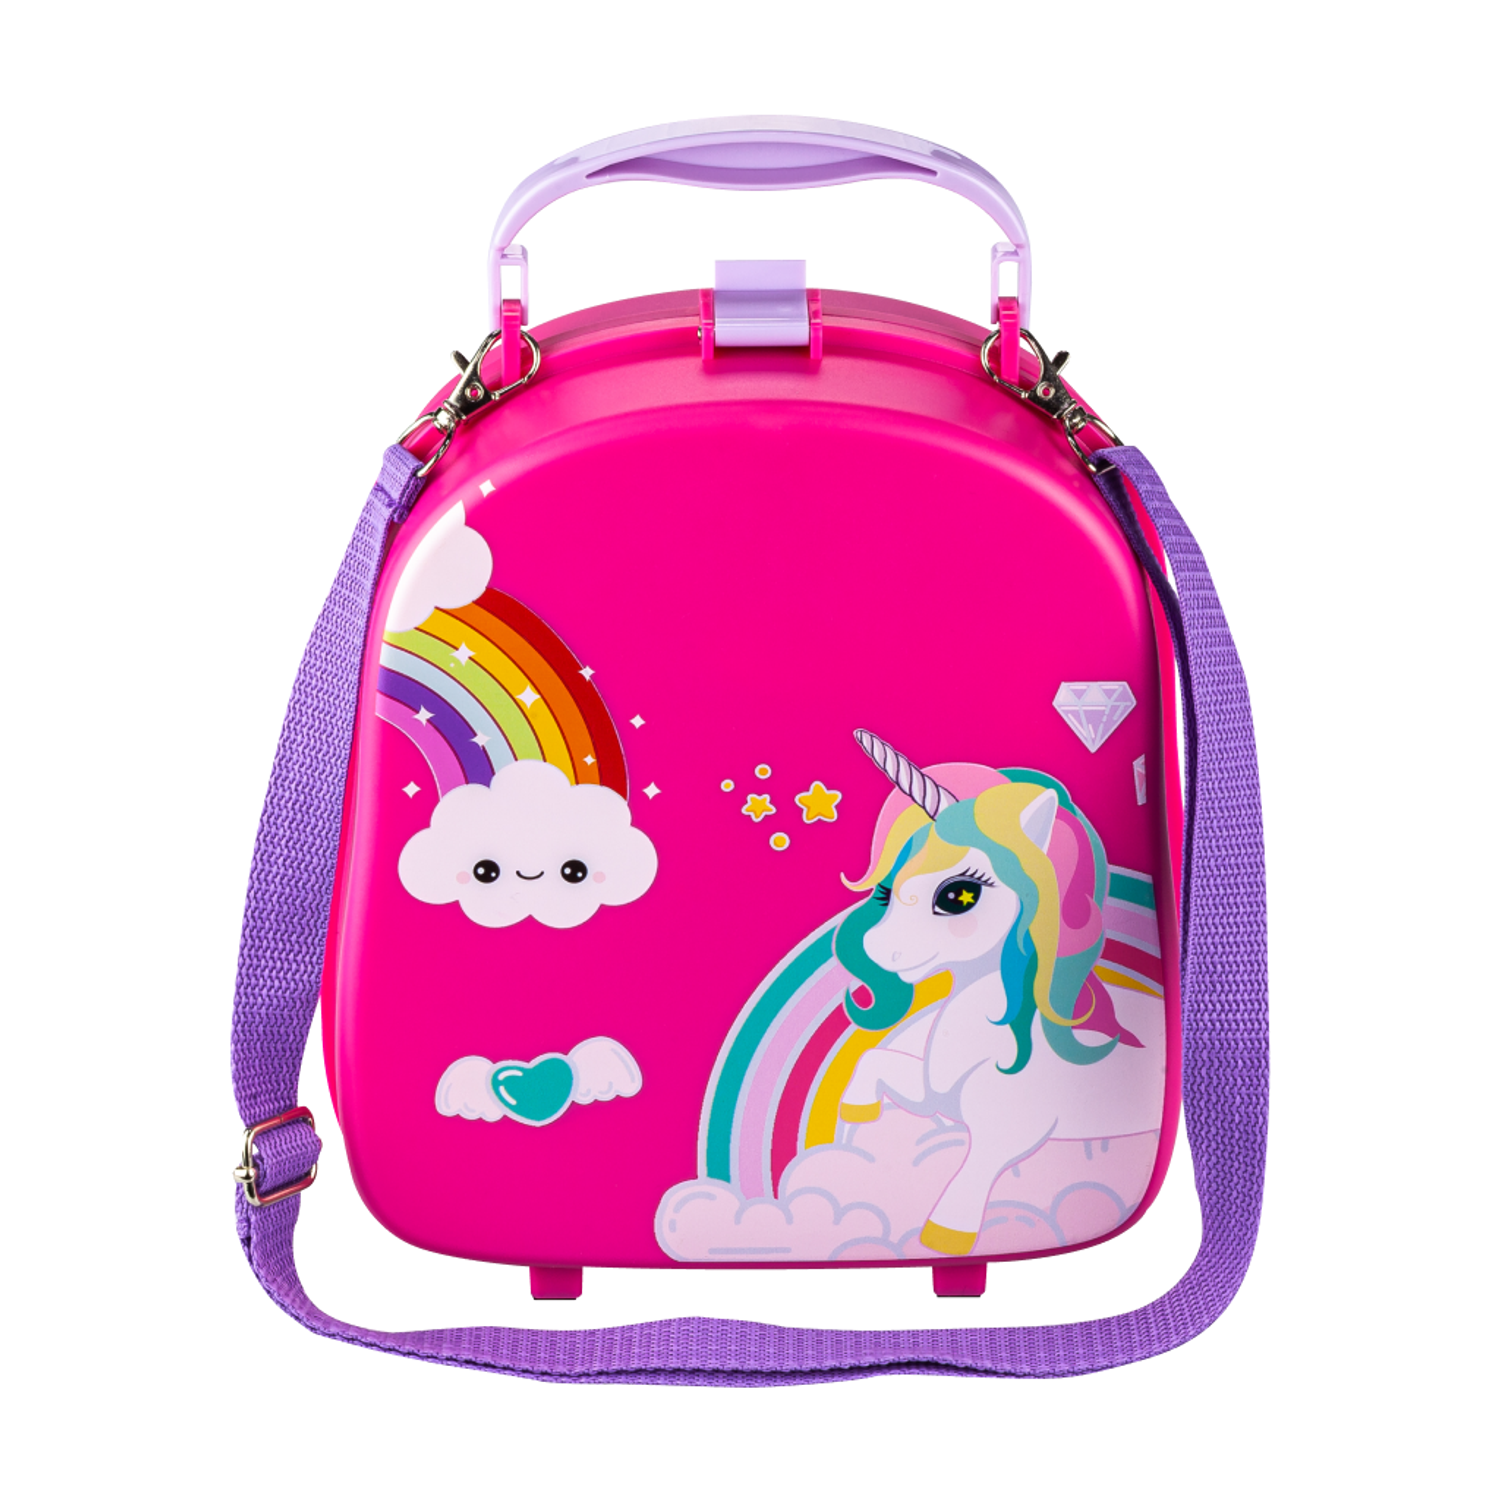 Караоке-рюкзачок для детей Solmax с микрофоном и колонкой Bluetooth розовый - фото 8